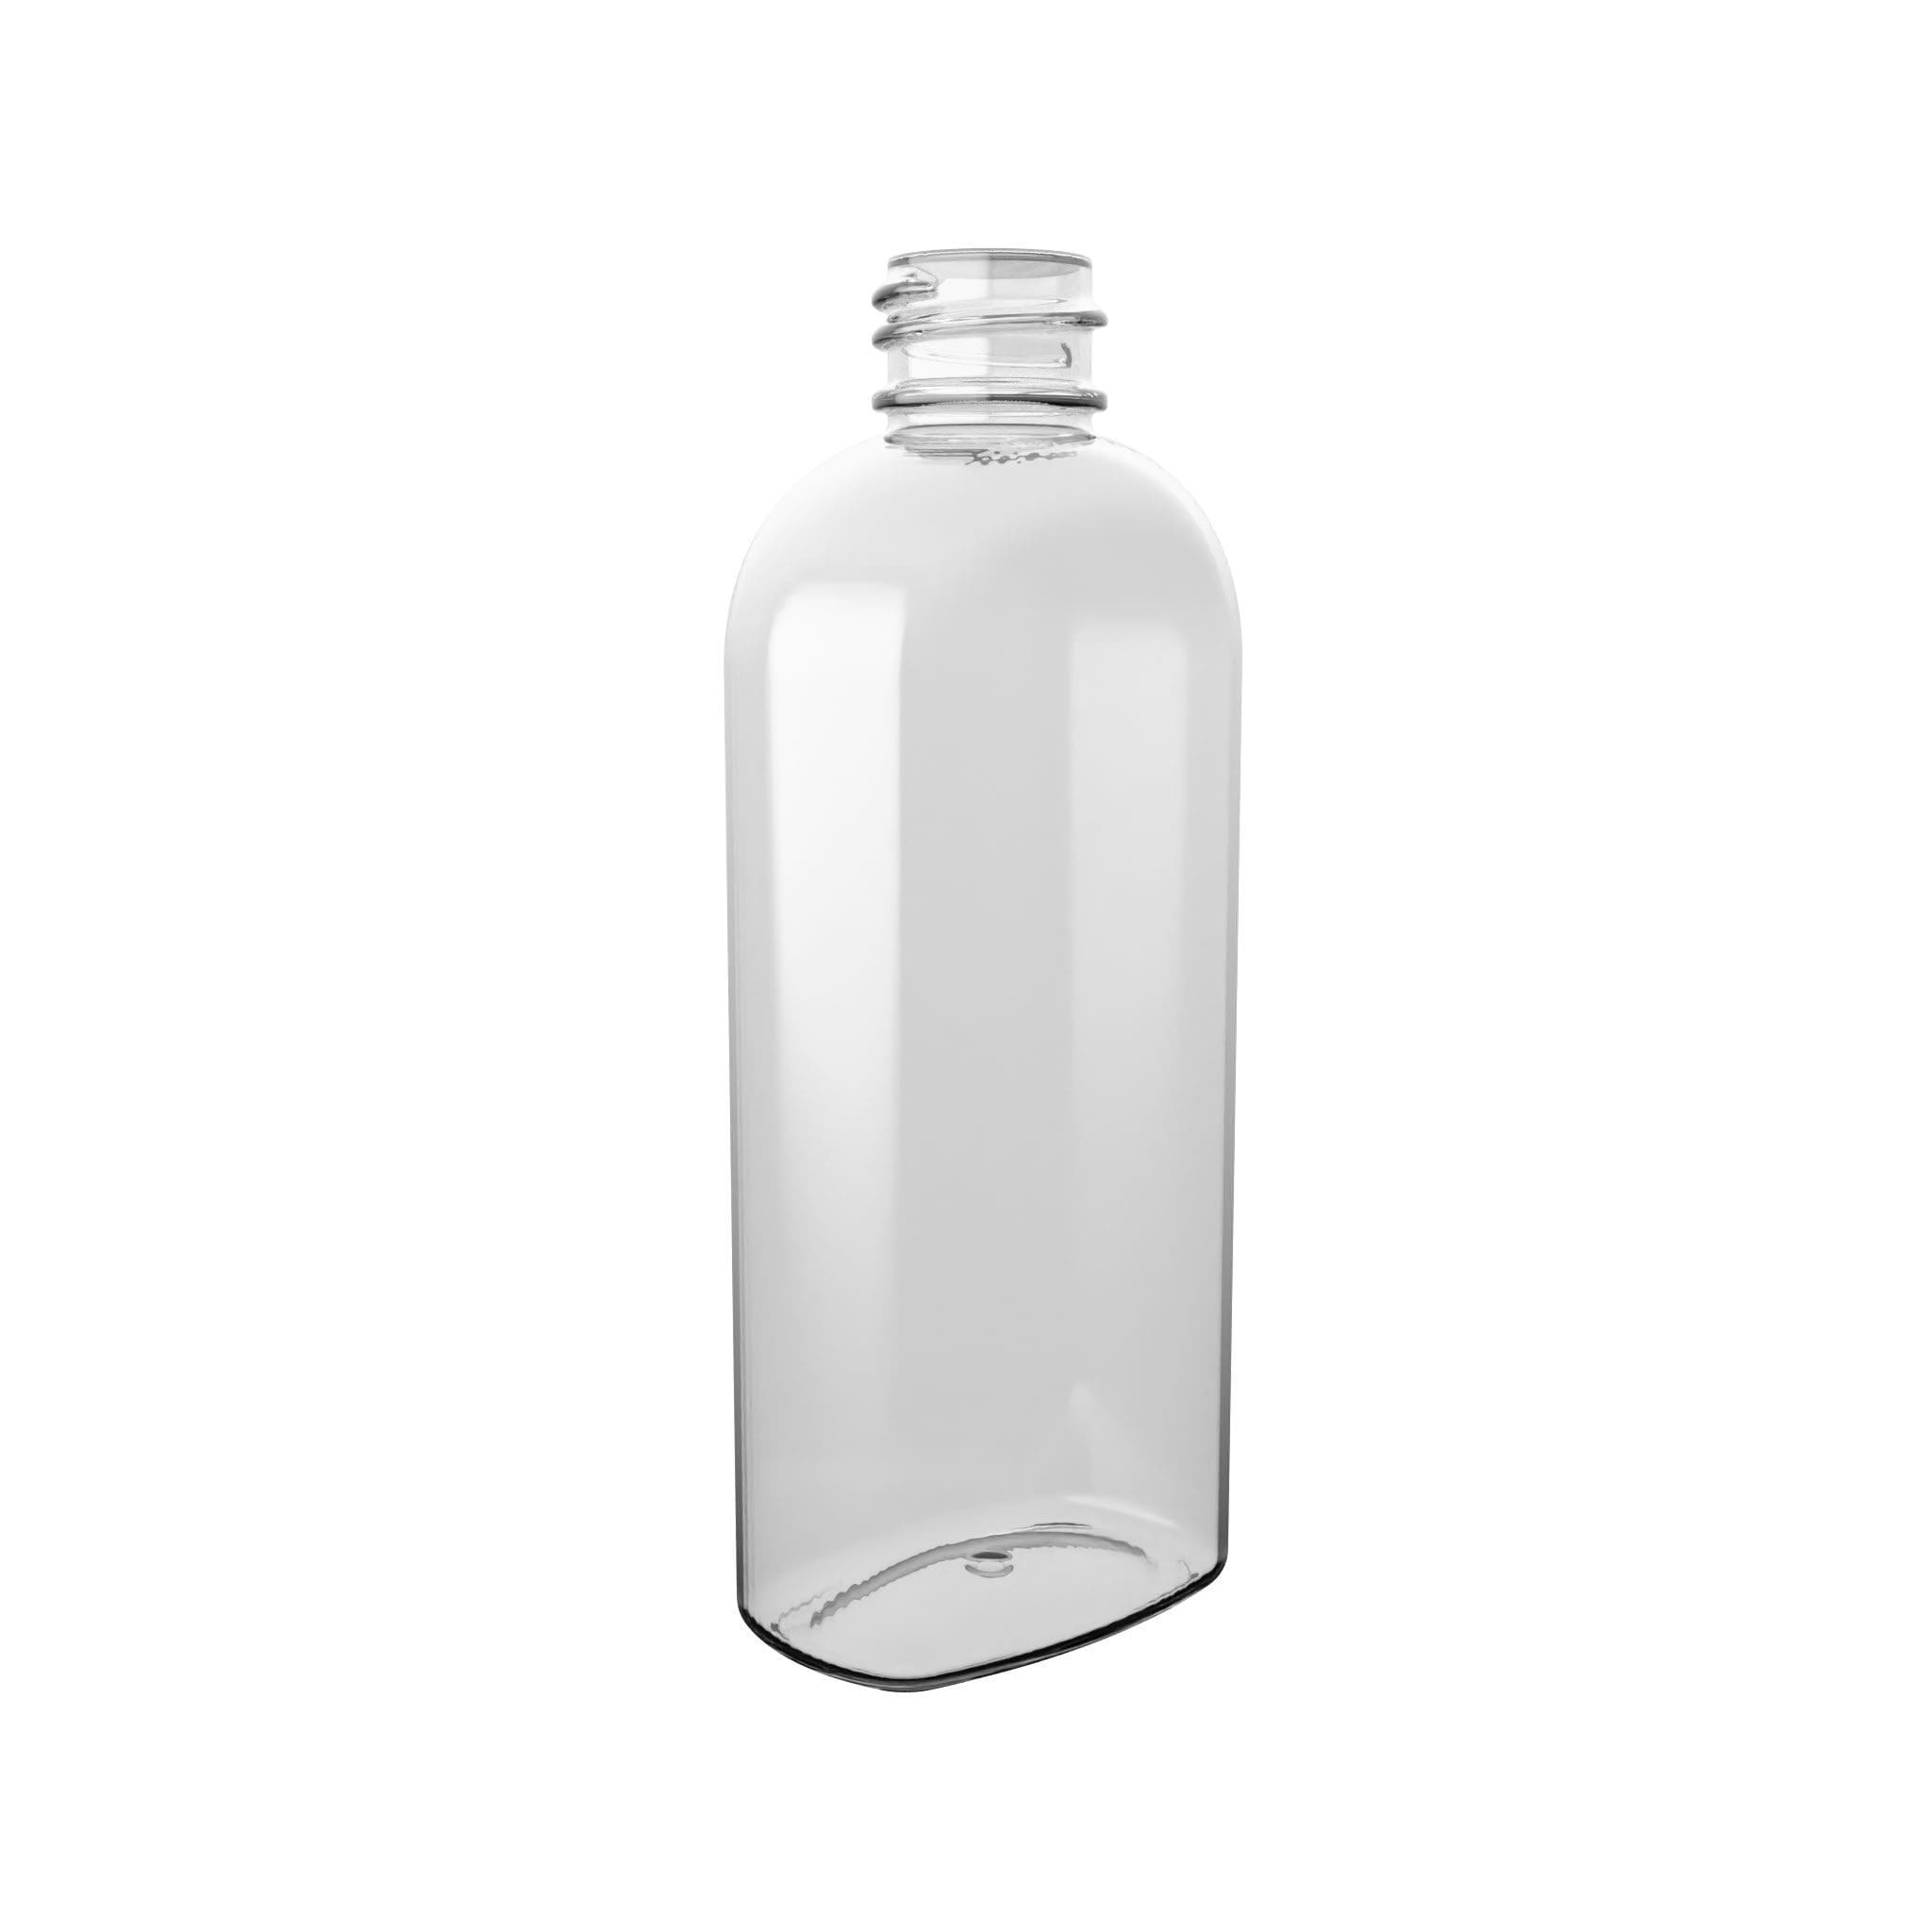 PET-Flasche BASIC OVAL in ovaler Flaschenform.